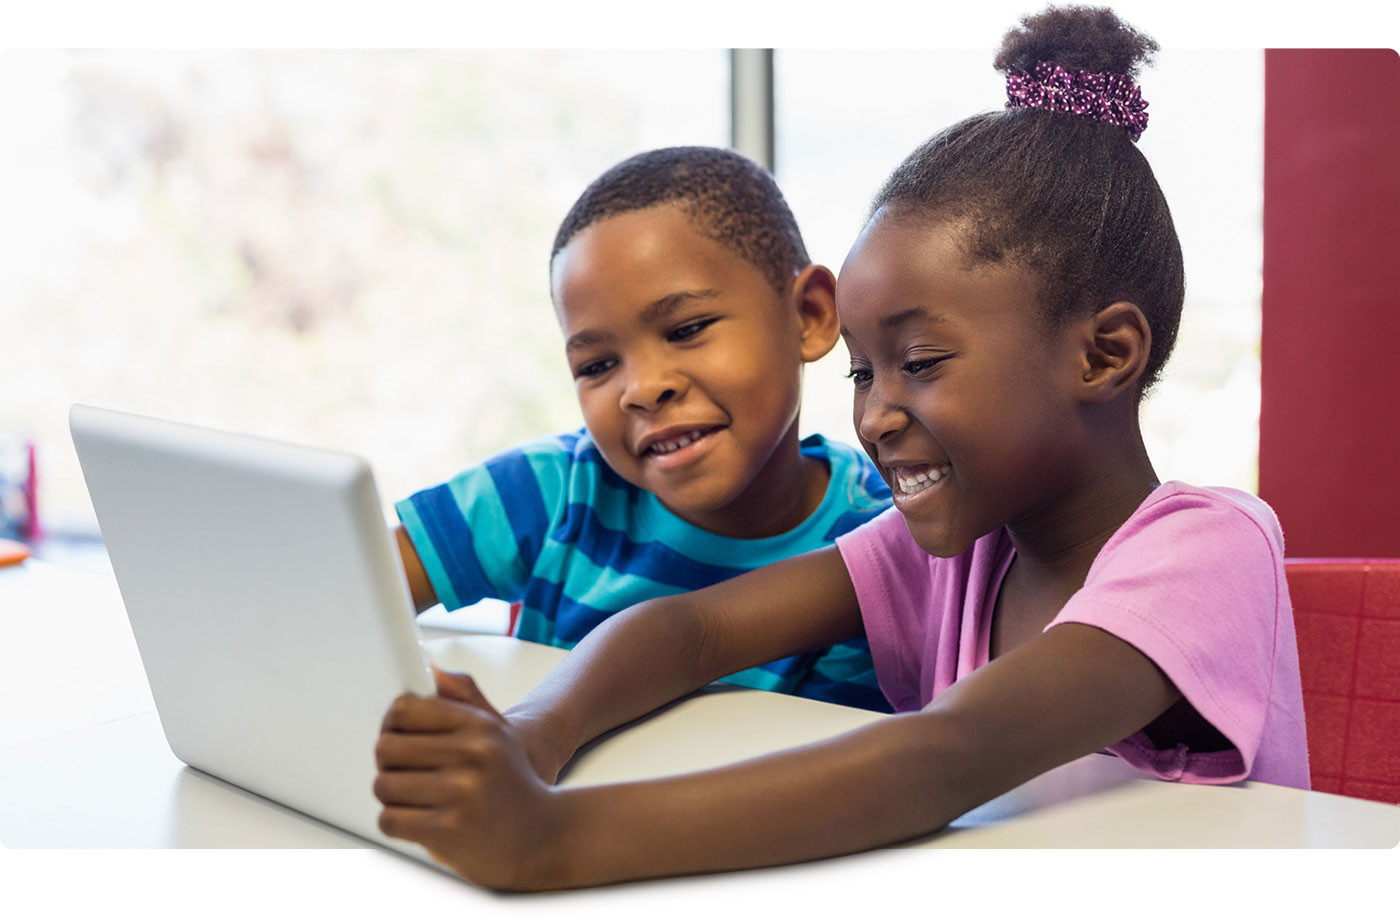 Children reading on laptop